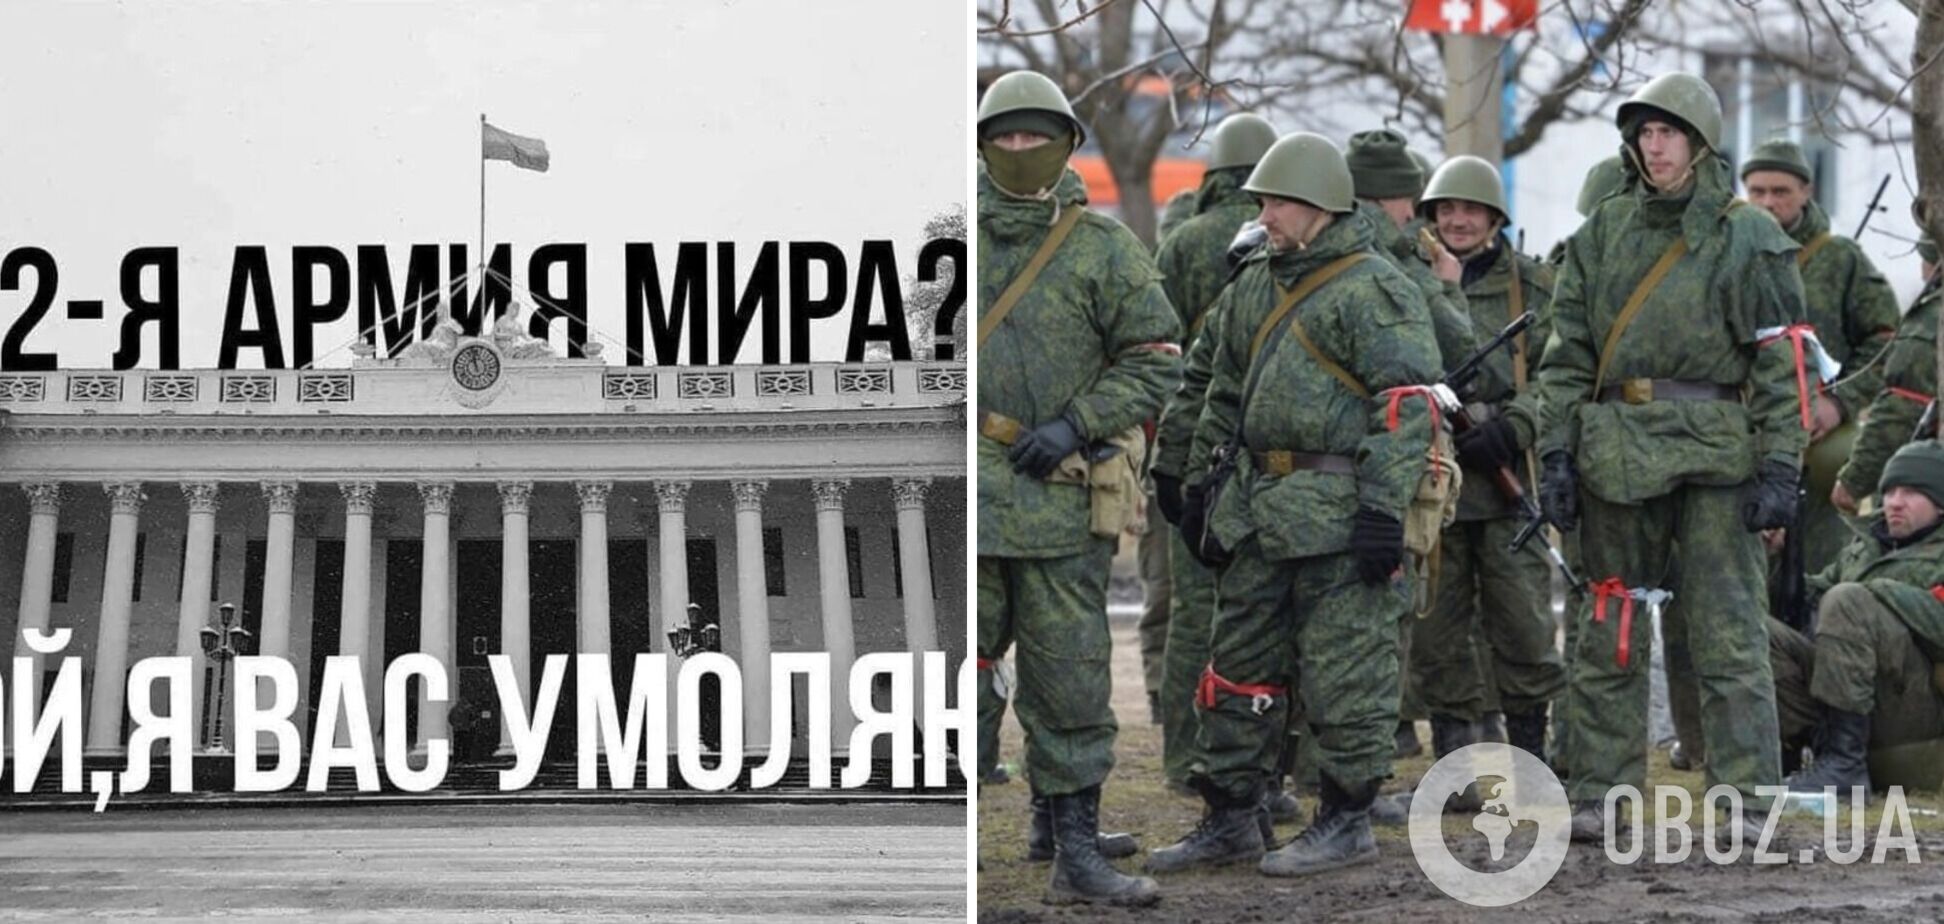 'Друга армія світу? Ой, я вас благаю' Провал військових Путіна в Україні висміяли 'одеськими' мемами